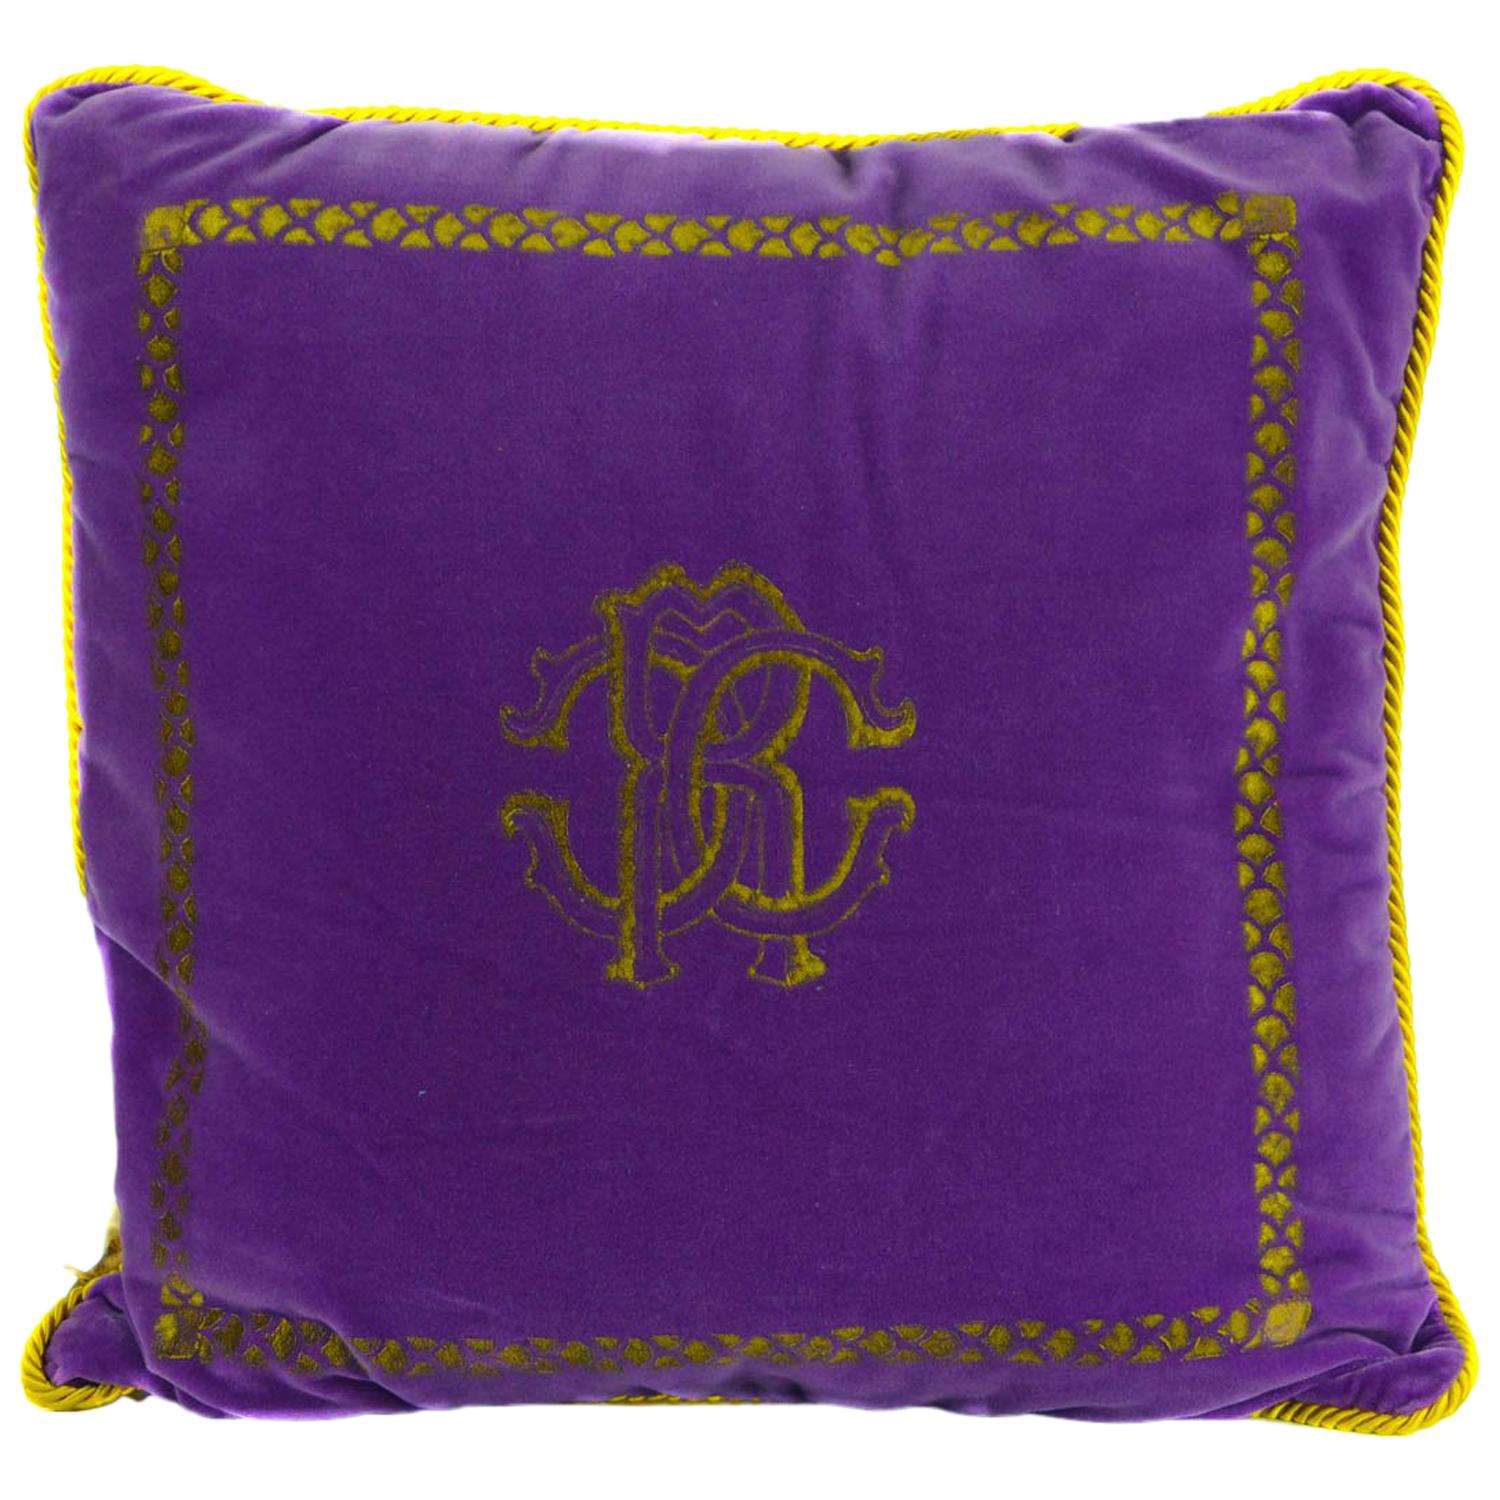 Roberto Cavalli Home Decorative Purple Cotton Square Cushion